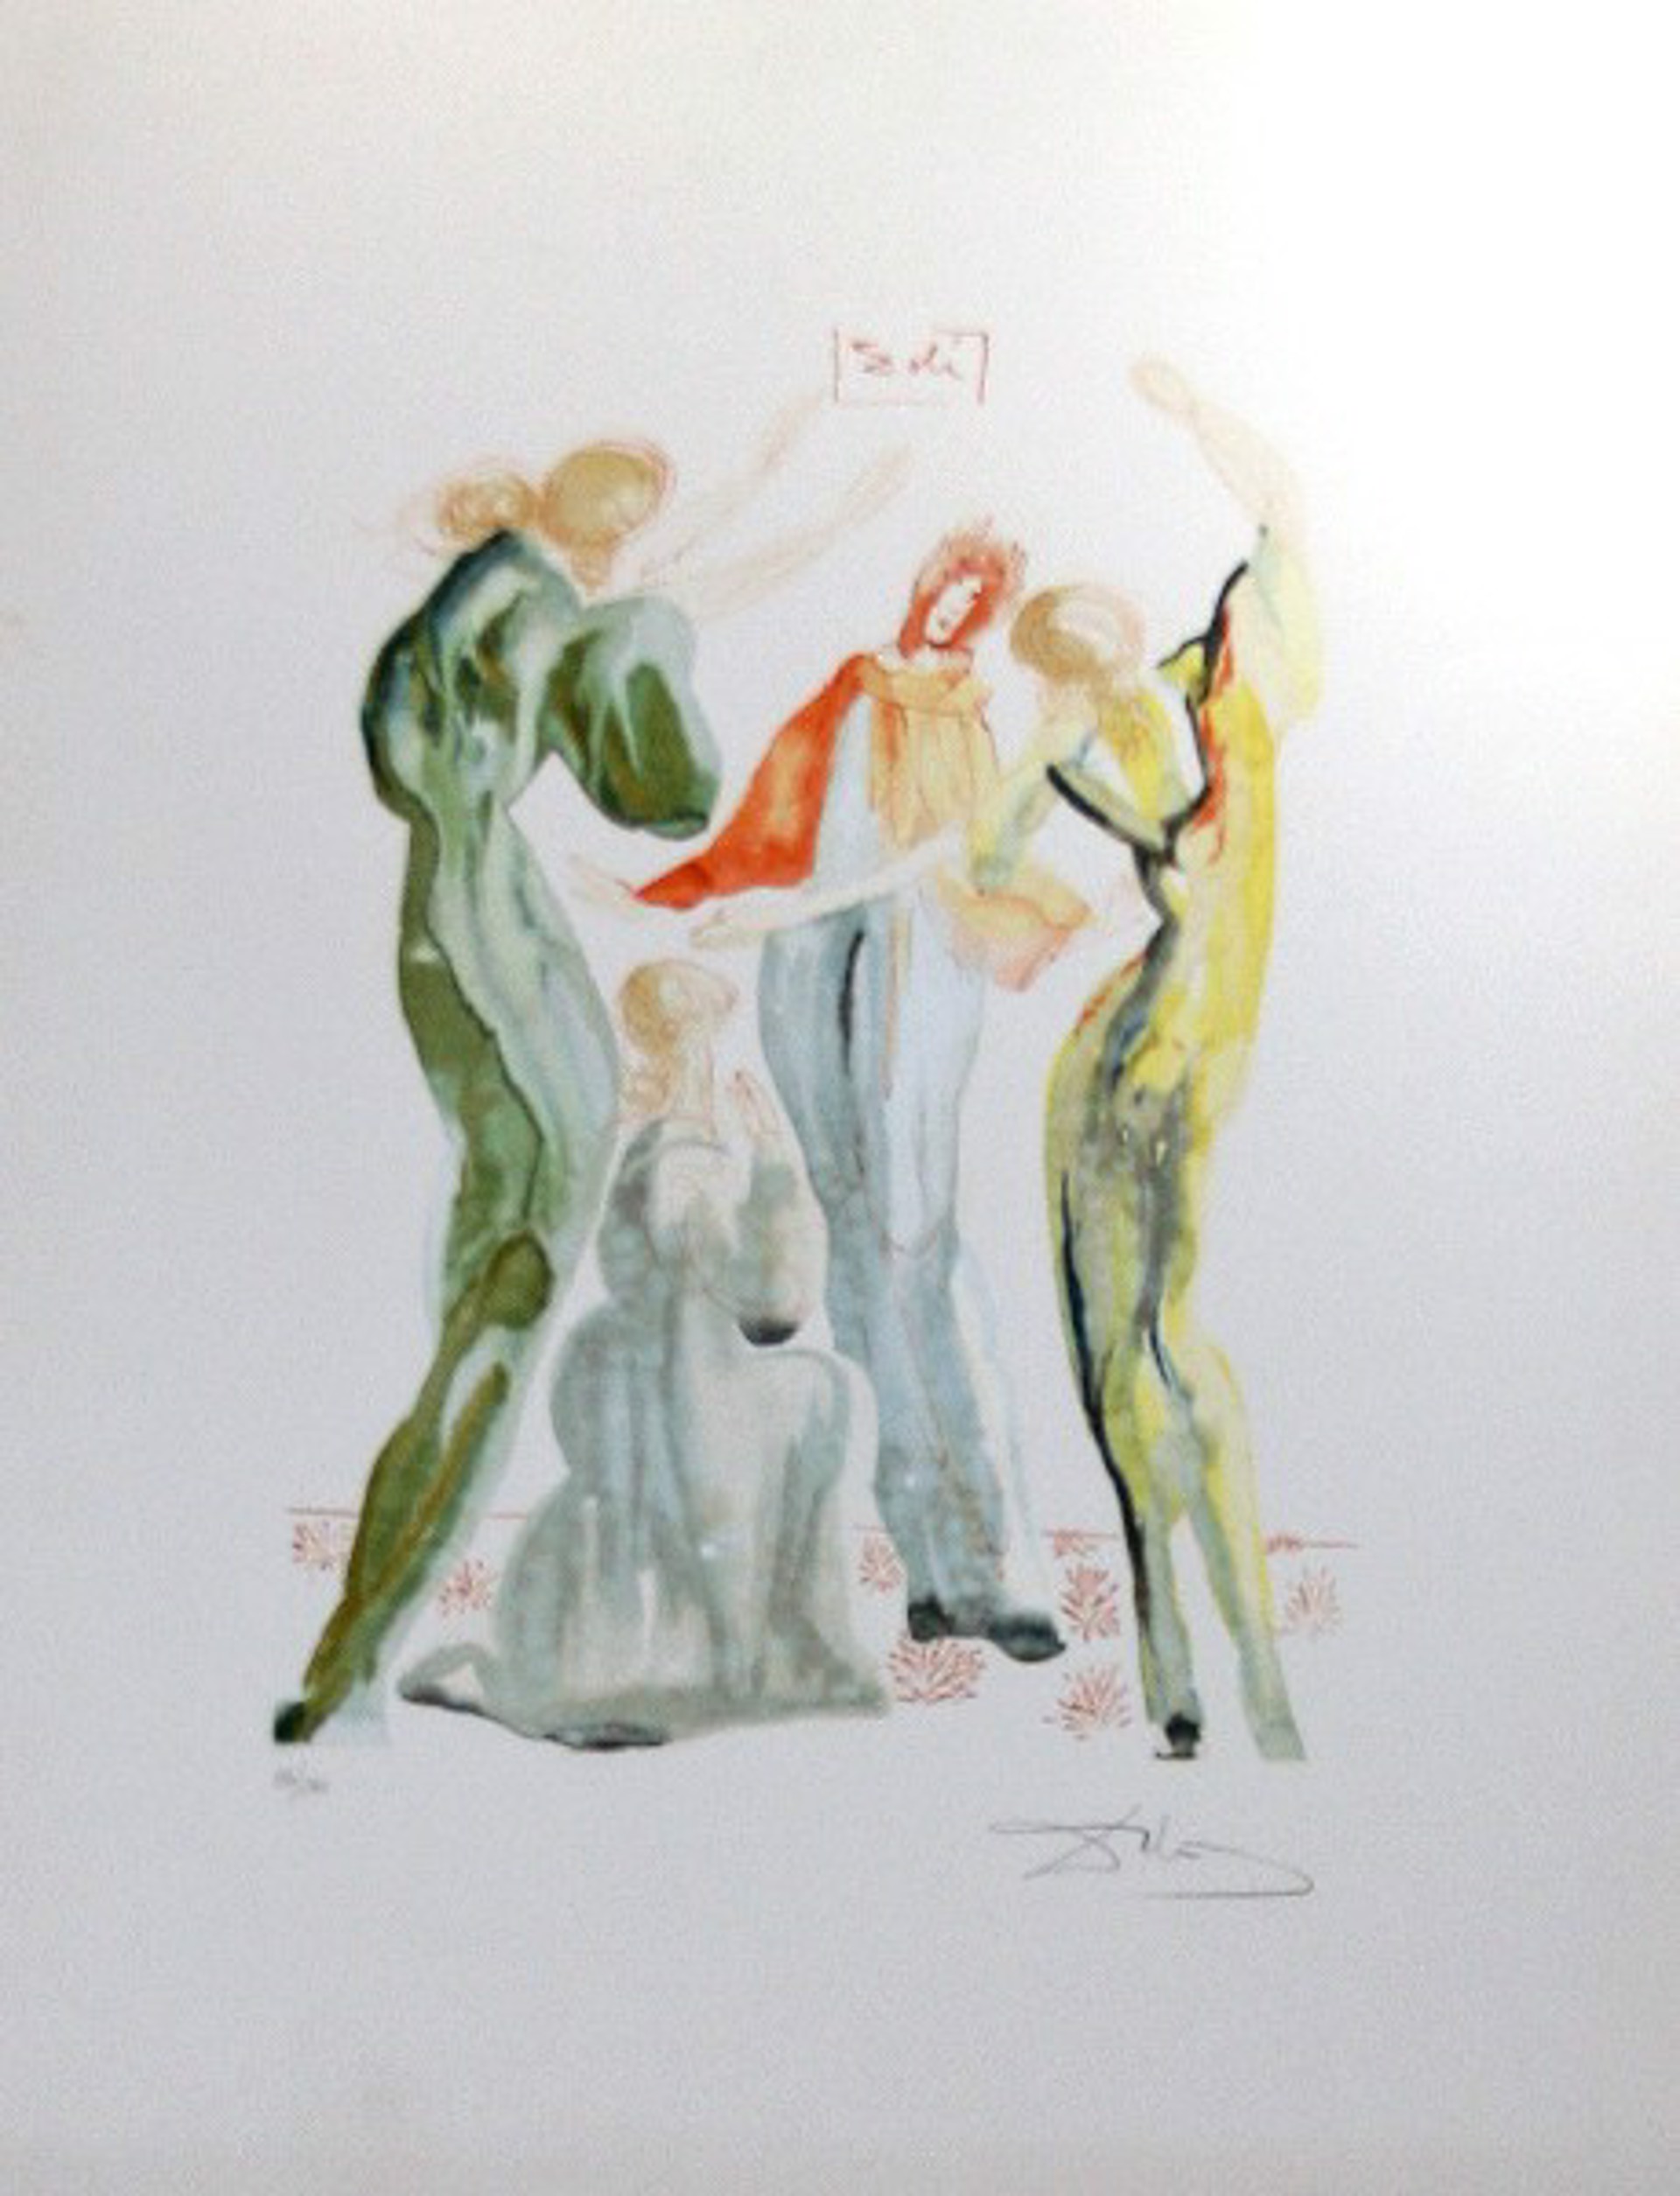 Les Servantes by Salvador Dali (1904 - 1989)